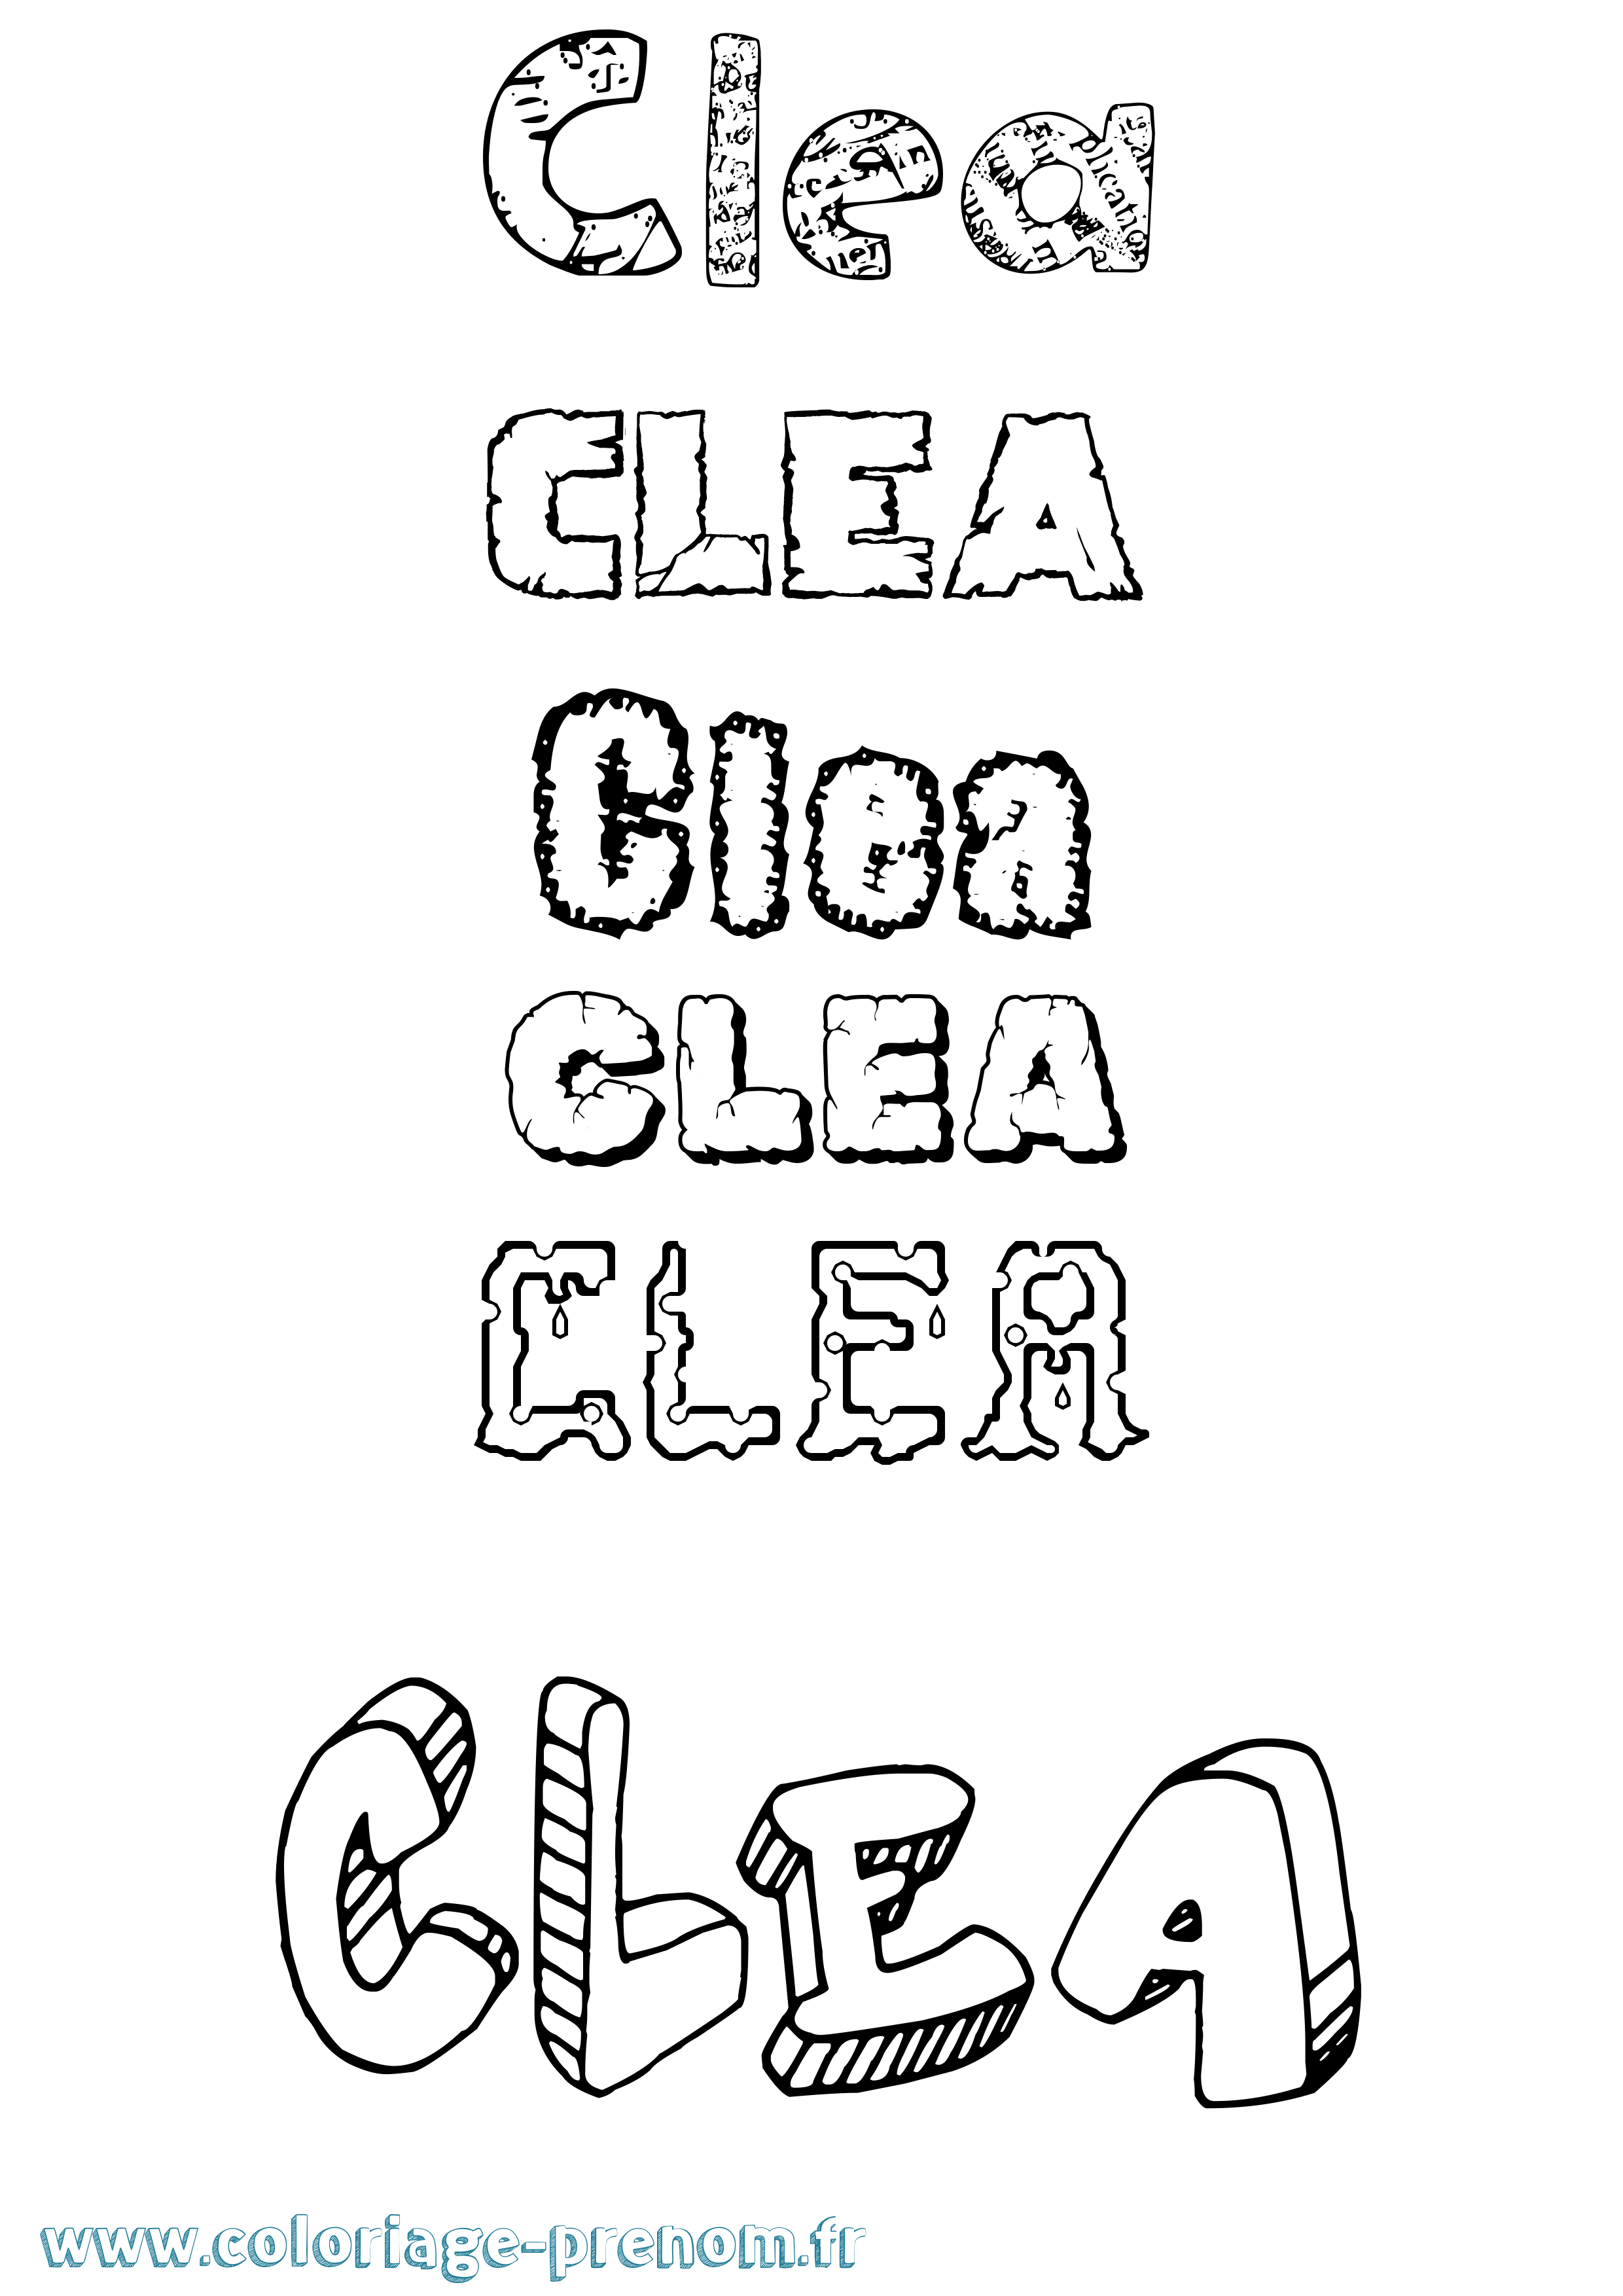 Coloriage prénom Clea